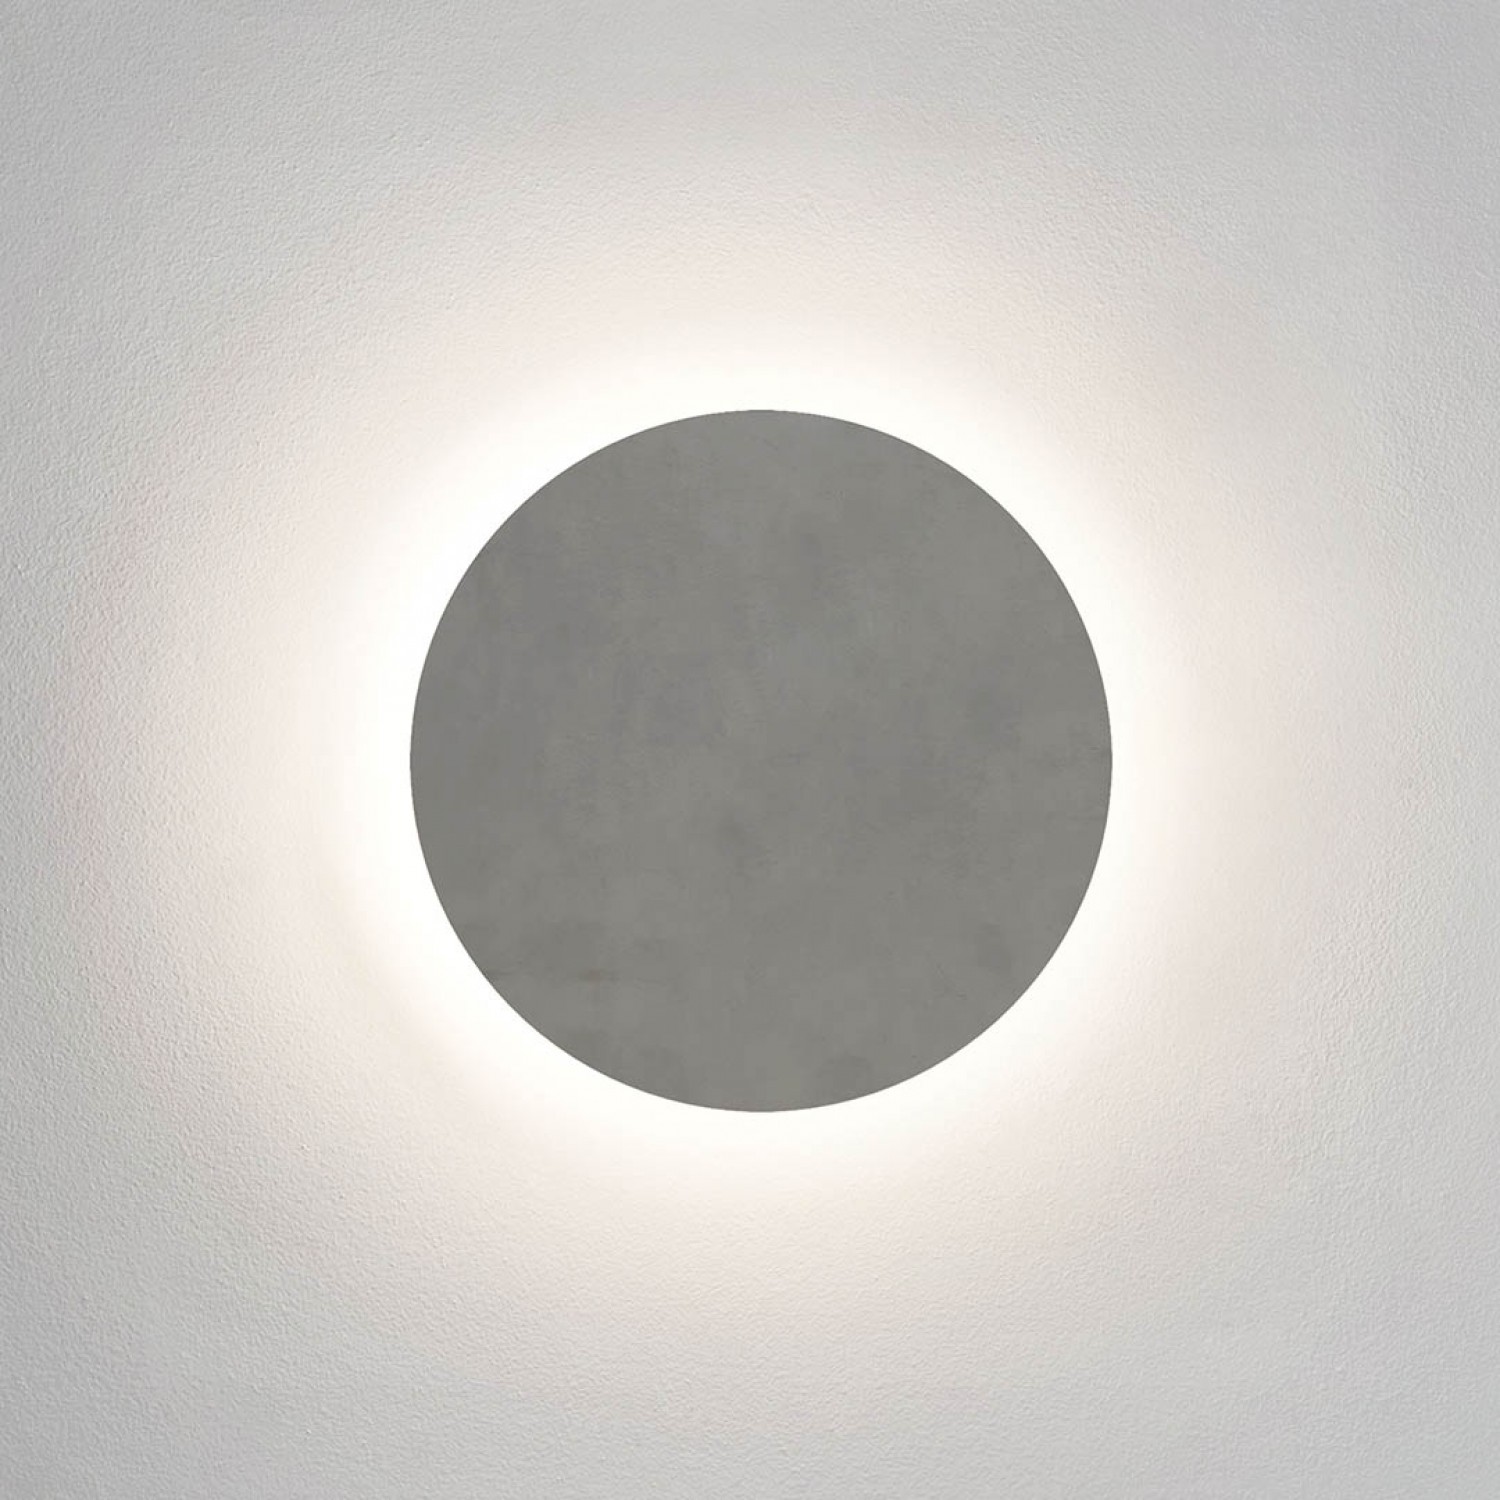 alt_image Архитектурное освещение Astro Eclipse Round 300 1333011